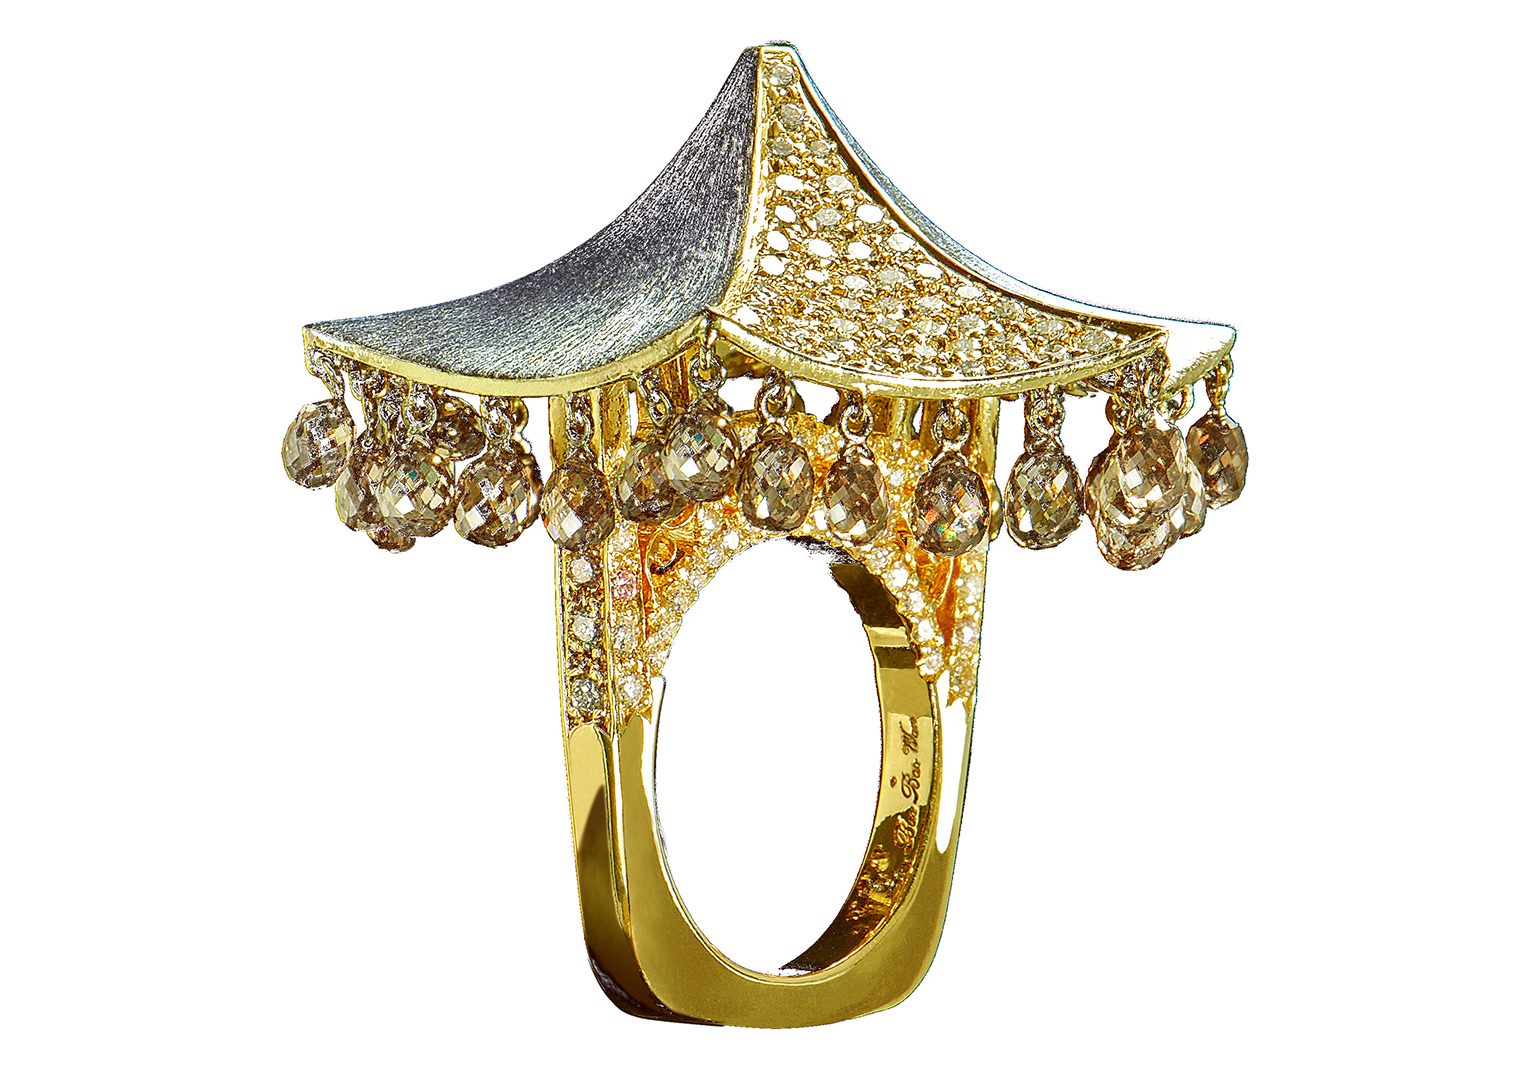 Bao Bao Wan 18K Gold and White Diamond Pagoda Ring Latest Revival